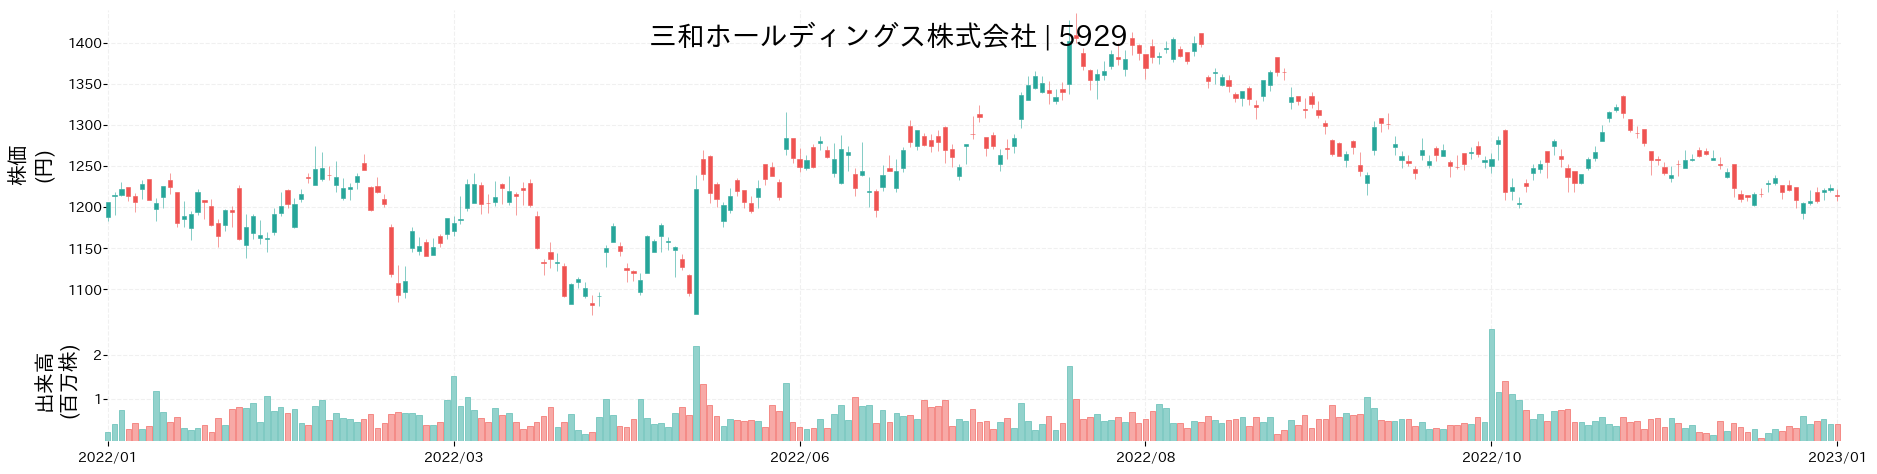 三和ホールディングスの株価推移(2022)